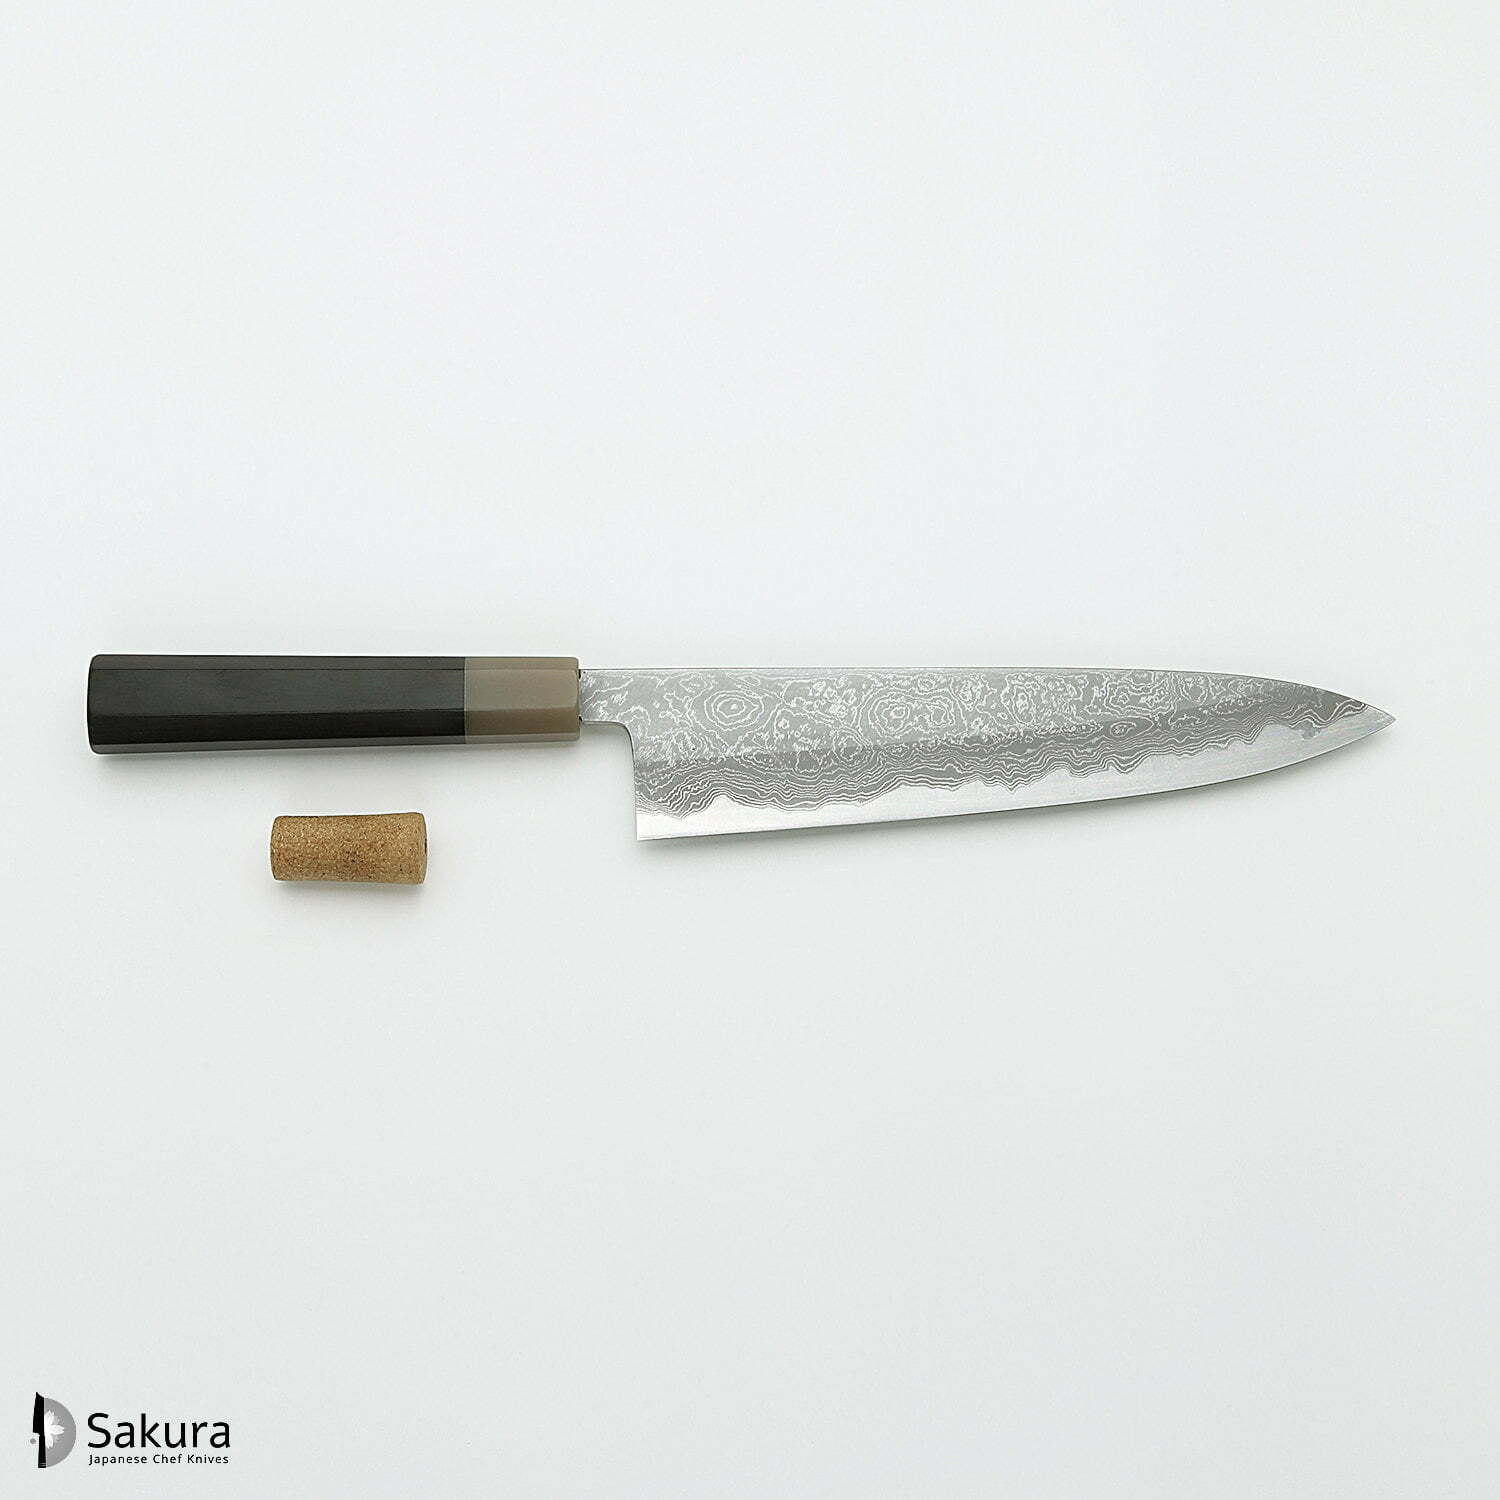 סכין שף רב-תכליתית גִּיוּטוֹ 240מ״מ מחושלת בעבודת יד 3 שכבות: פלדת פחמן יפנית מתקדמת מסוג Shirogami #1 עטופה פלדת דמשק אל-חלד גימור דמשק יושיקאזו טאנקה יפן